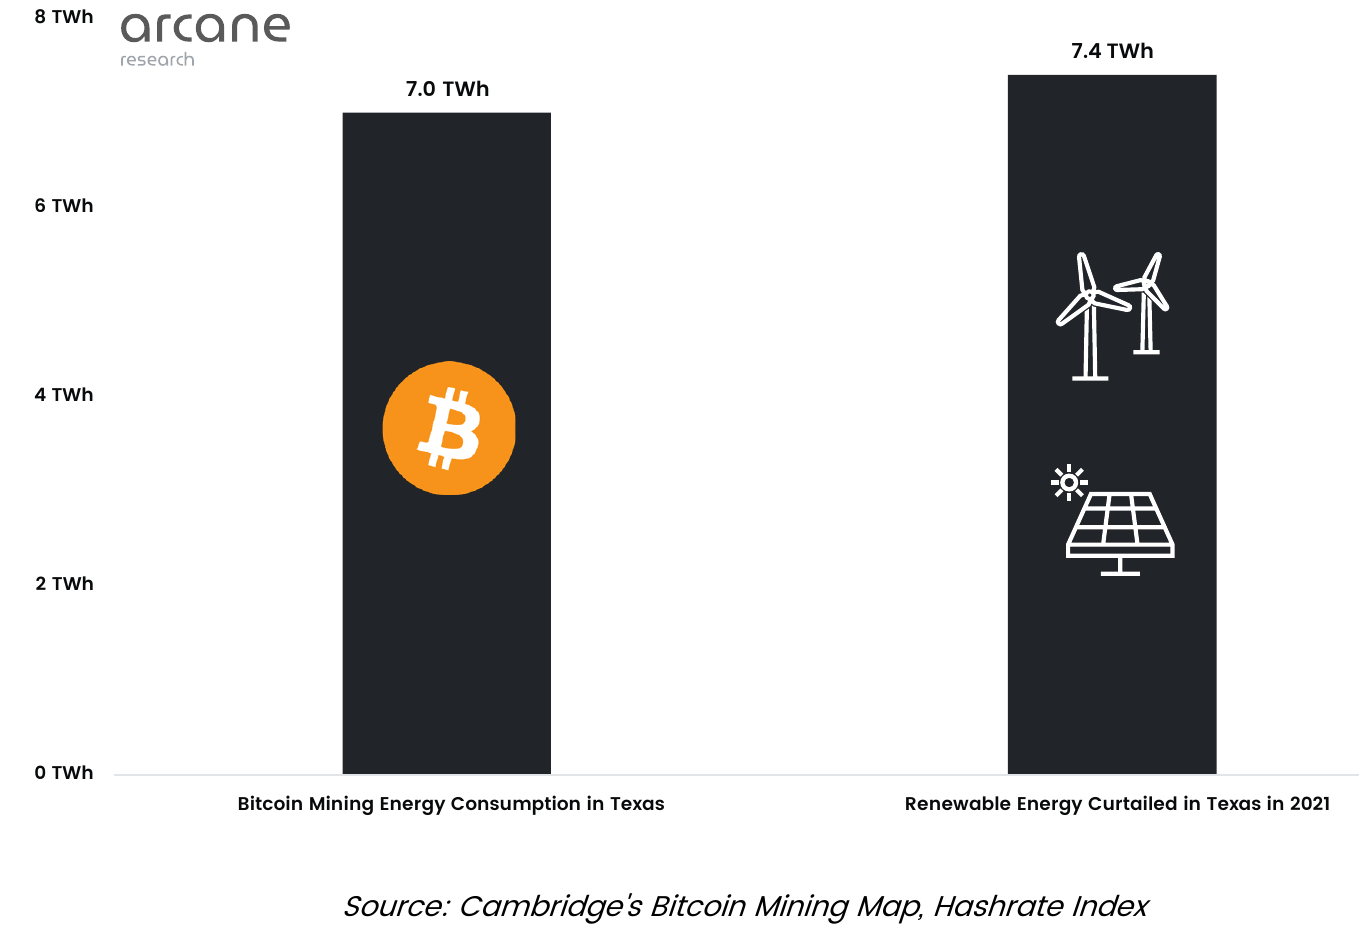 consumo de energia de mineração de Bitcoin vs. energia renovável reduzido em 2021